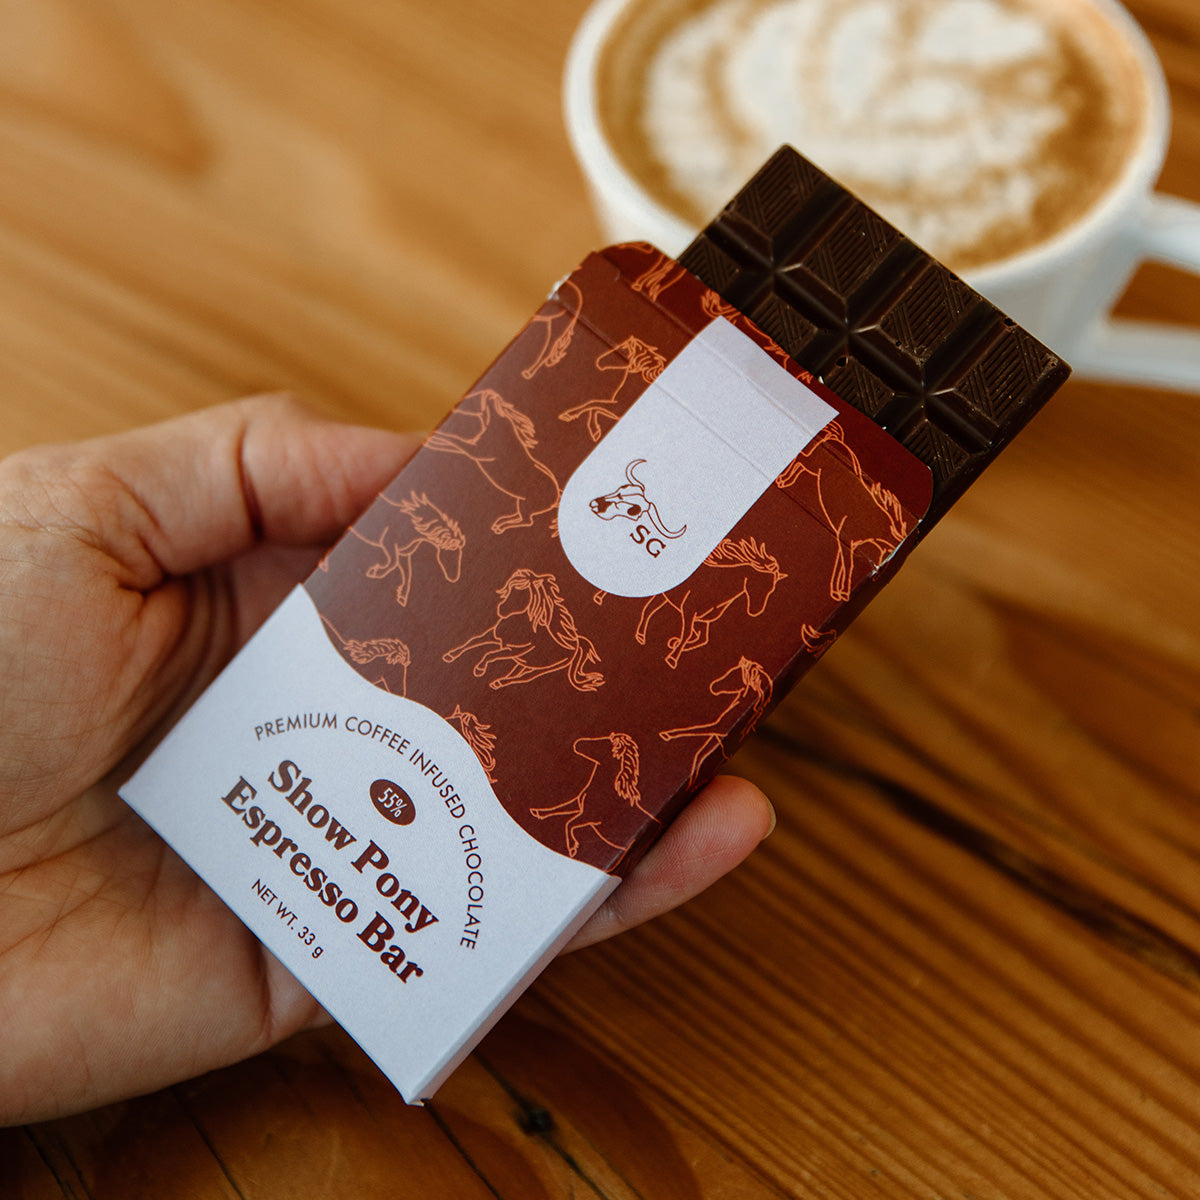 Espresso Chocolate Bar | 55% Cocoa